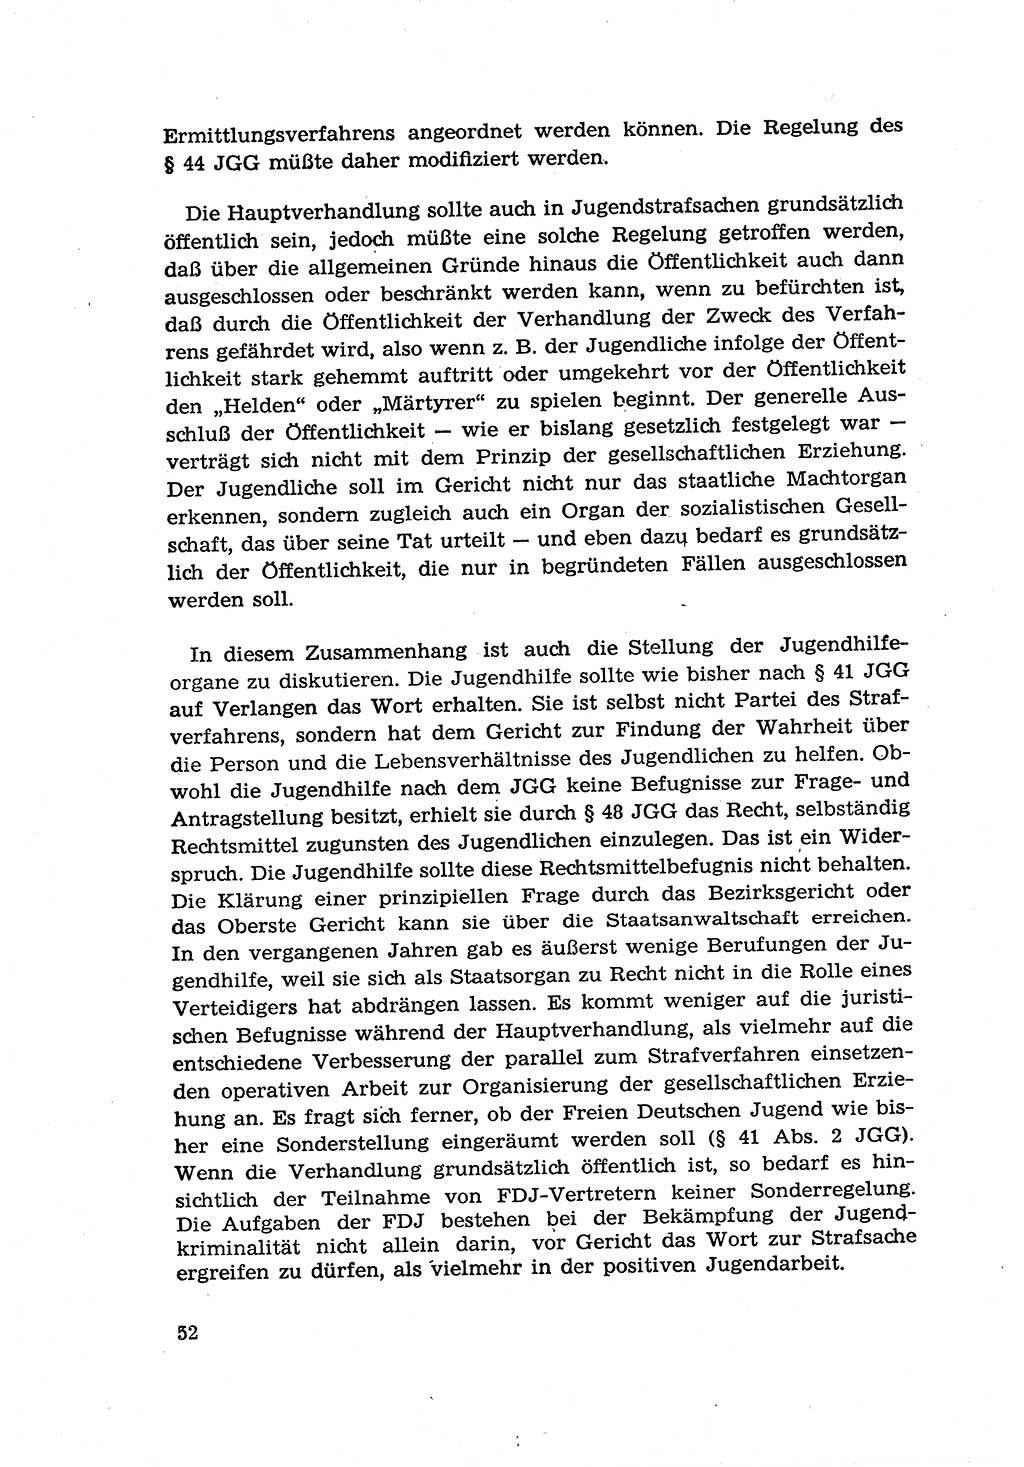 Zur Entwicklung des sozialistischen Strafrechts der Deutschen Demokratischen Republik (DDR) 1960, Seite 52 (Entw. soz. Strafr. DDR 1960, S. 52)